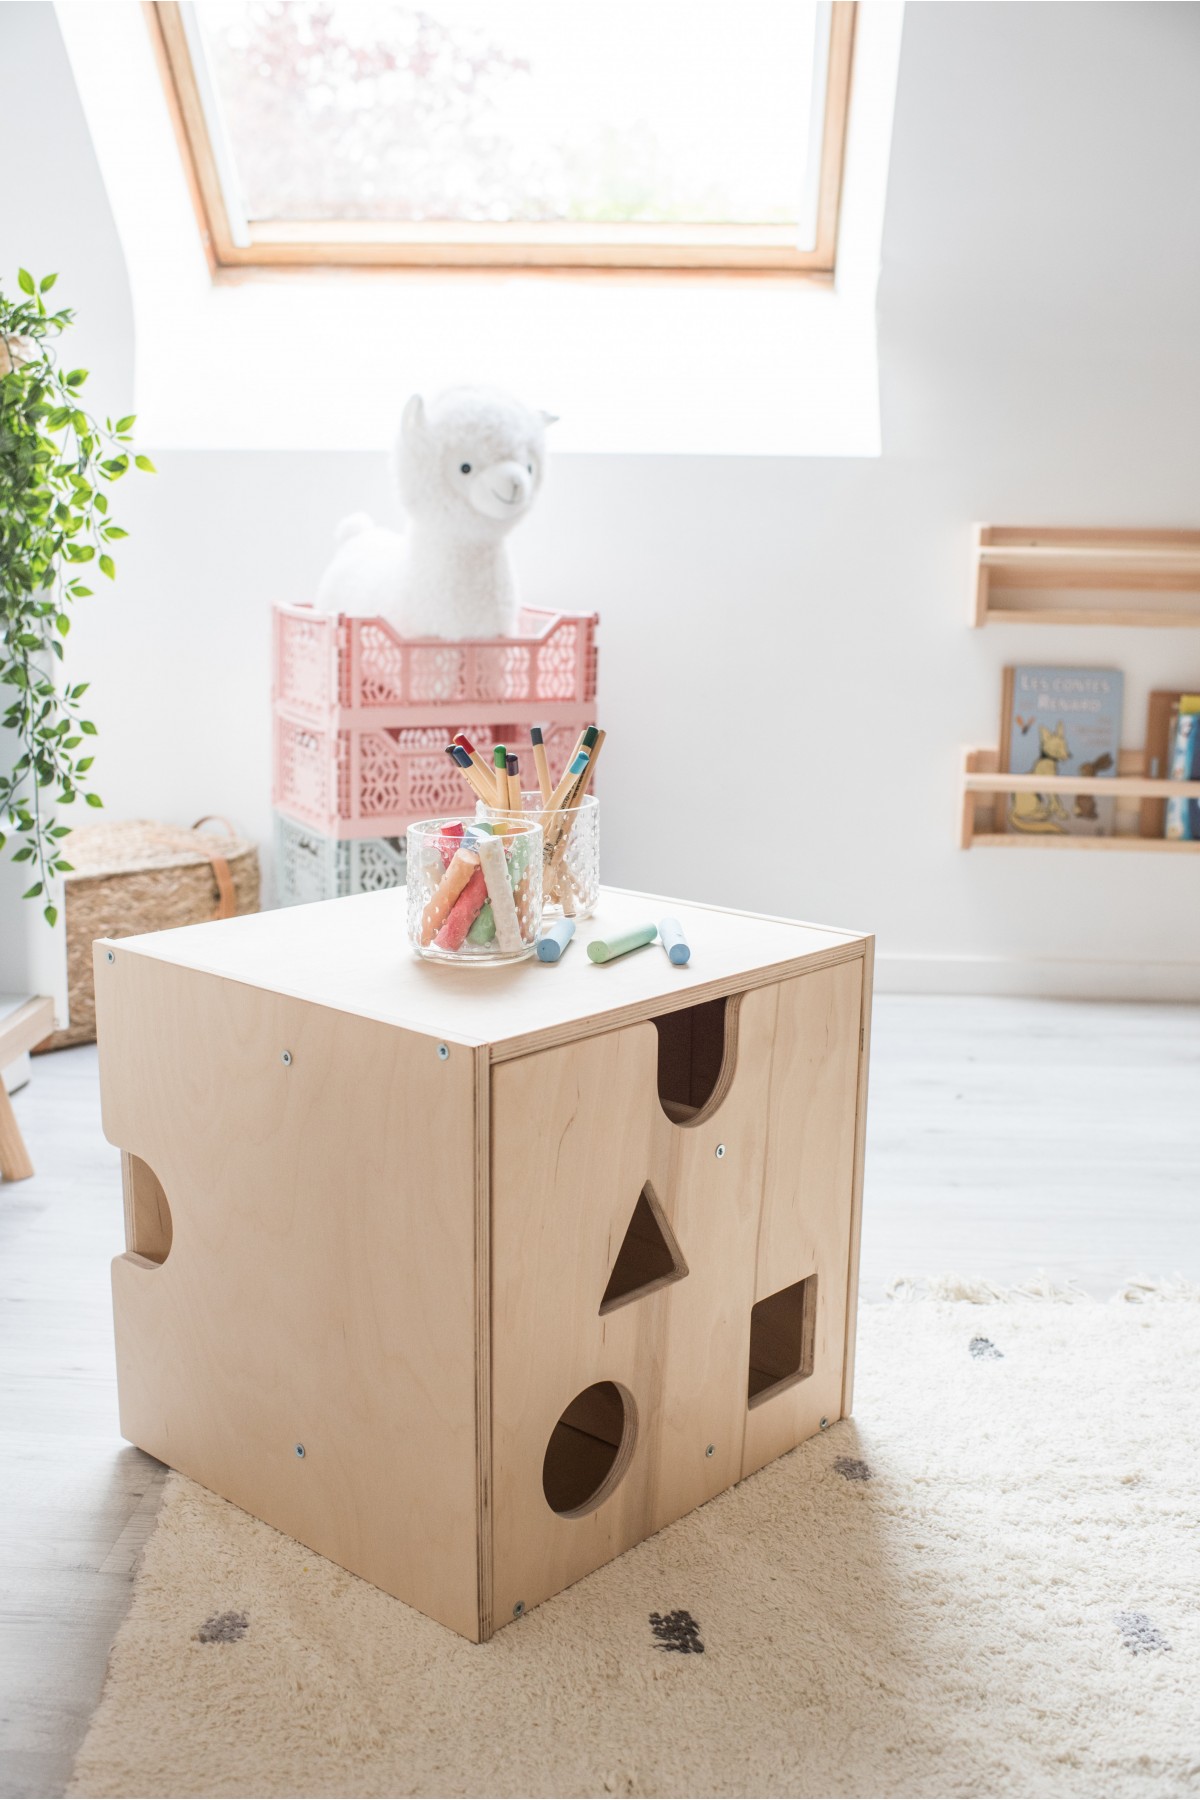 Table Montessori et Chaise Enfant - Bois naturel